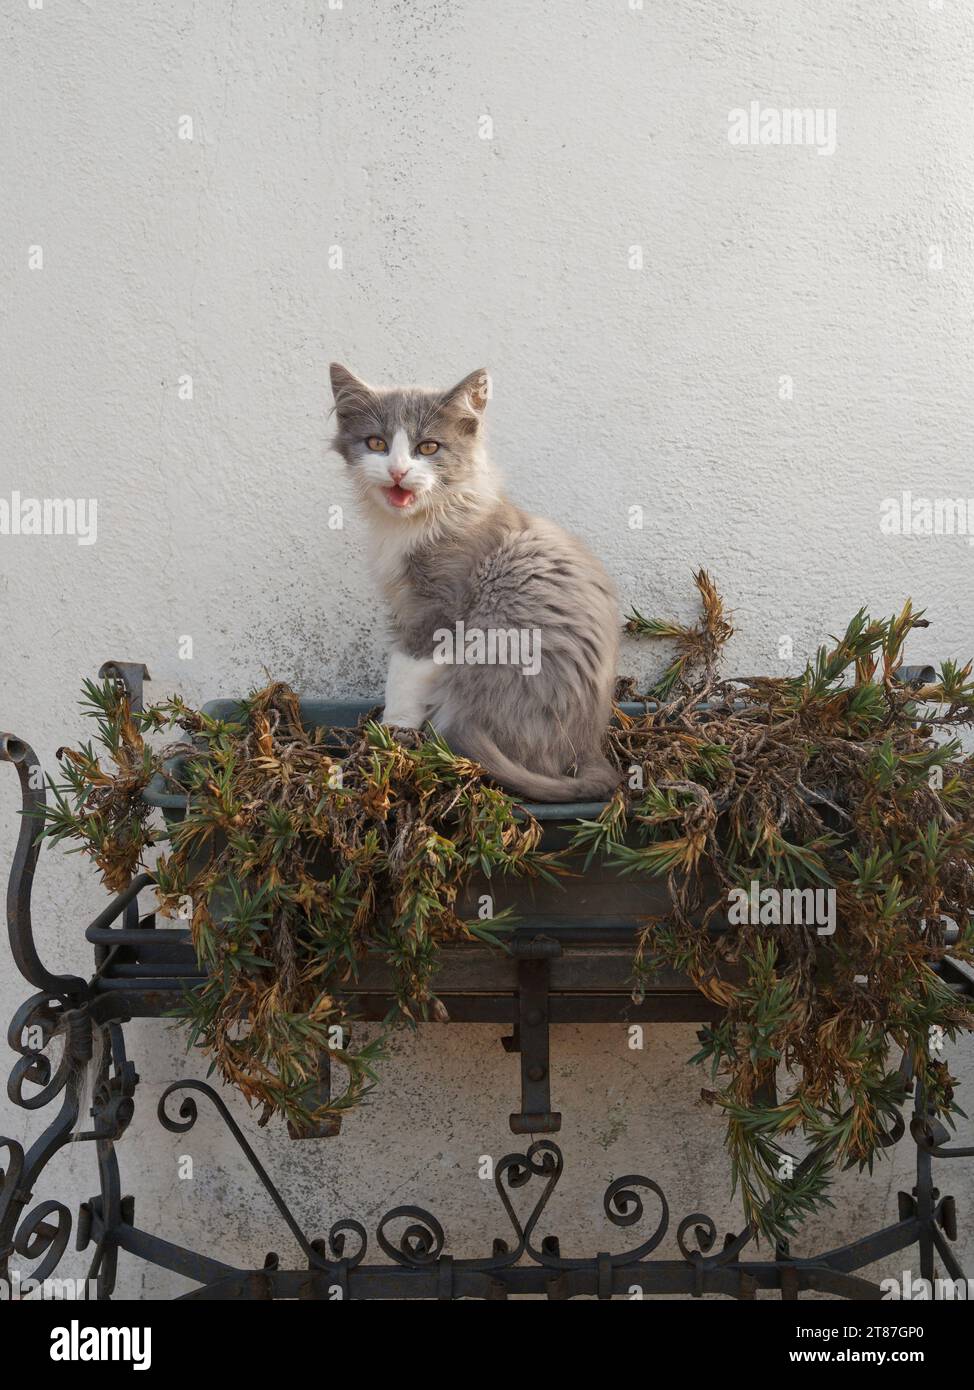 Adorable chaton moelleux gris et blanc est assis sur une jardinière avec des plantes fanées semblant mi-miaou une expression inhabituelle. Novembre 2023 Banque D'Images